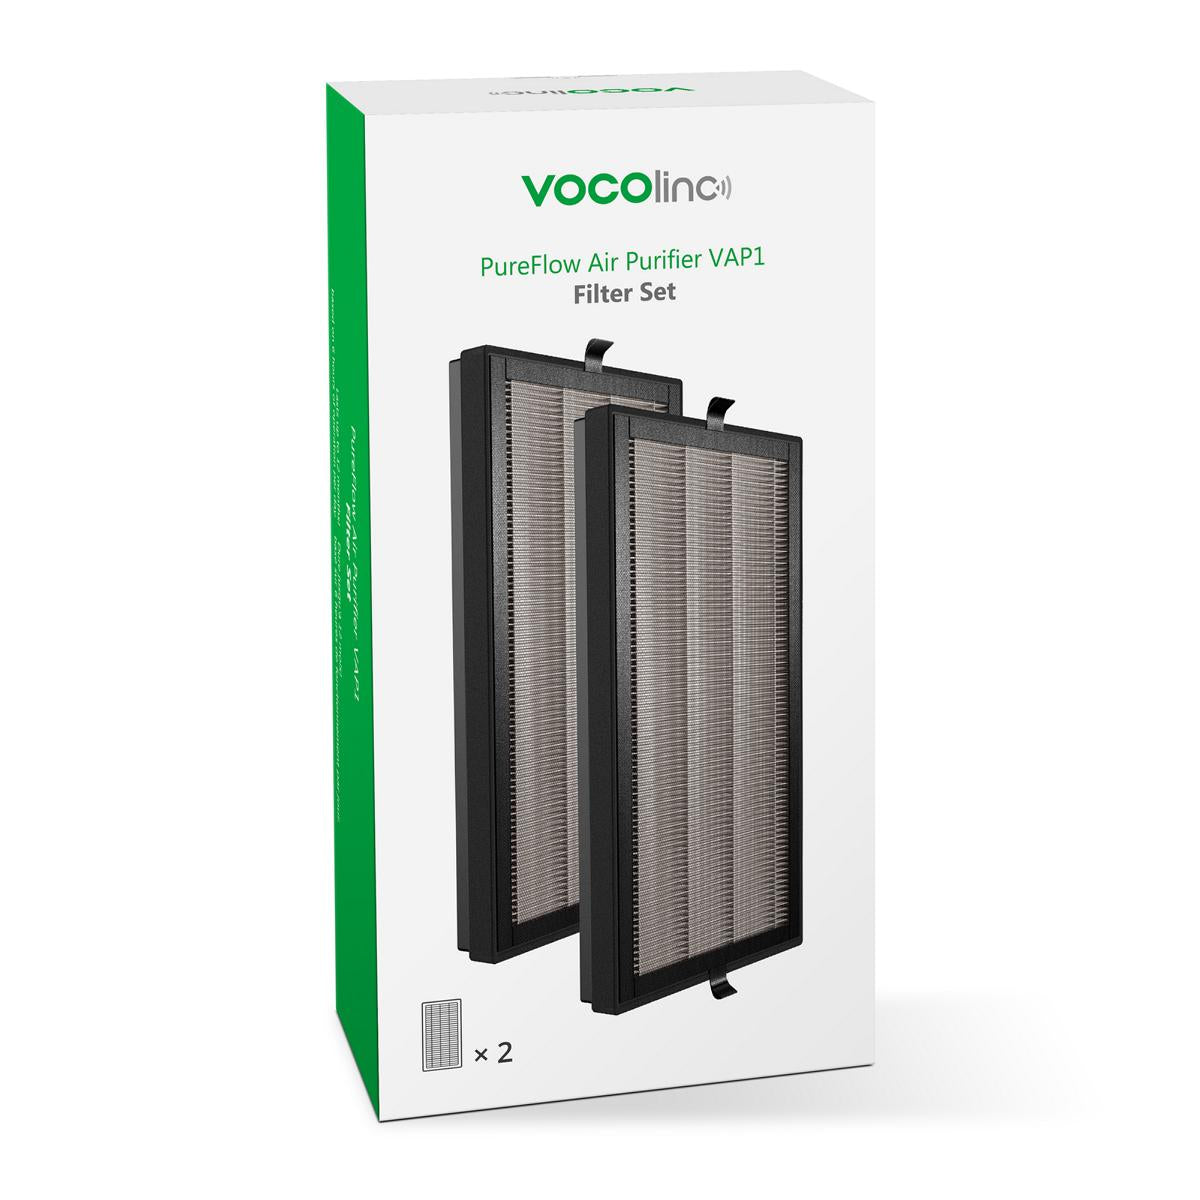 VOCOlinc True HEPA Replacement Filter HomeKit Air Purifer VAP1 (1Pair). Air Purifier Filter Set